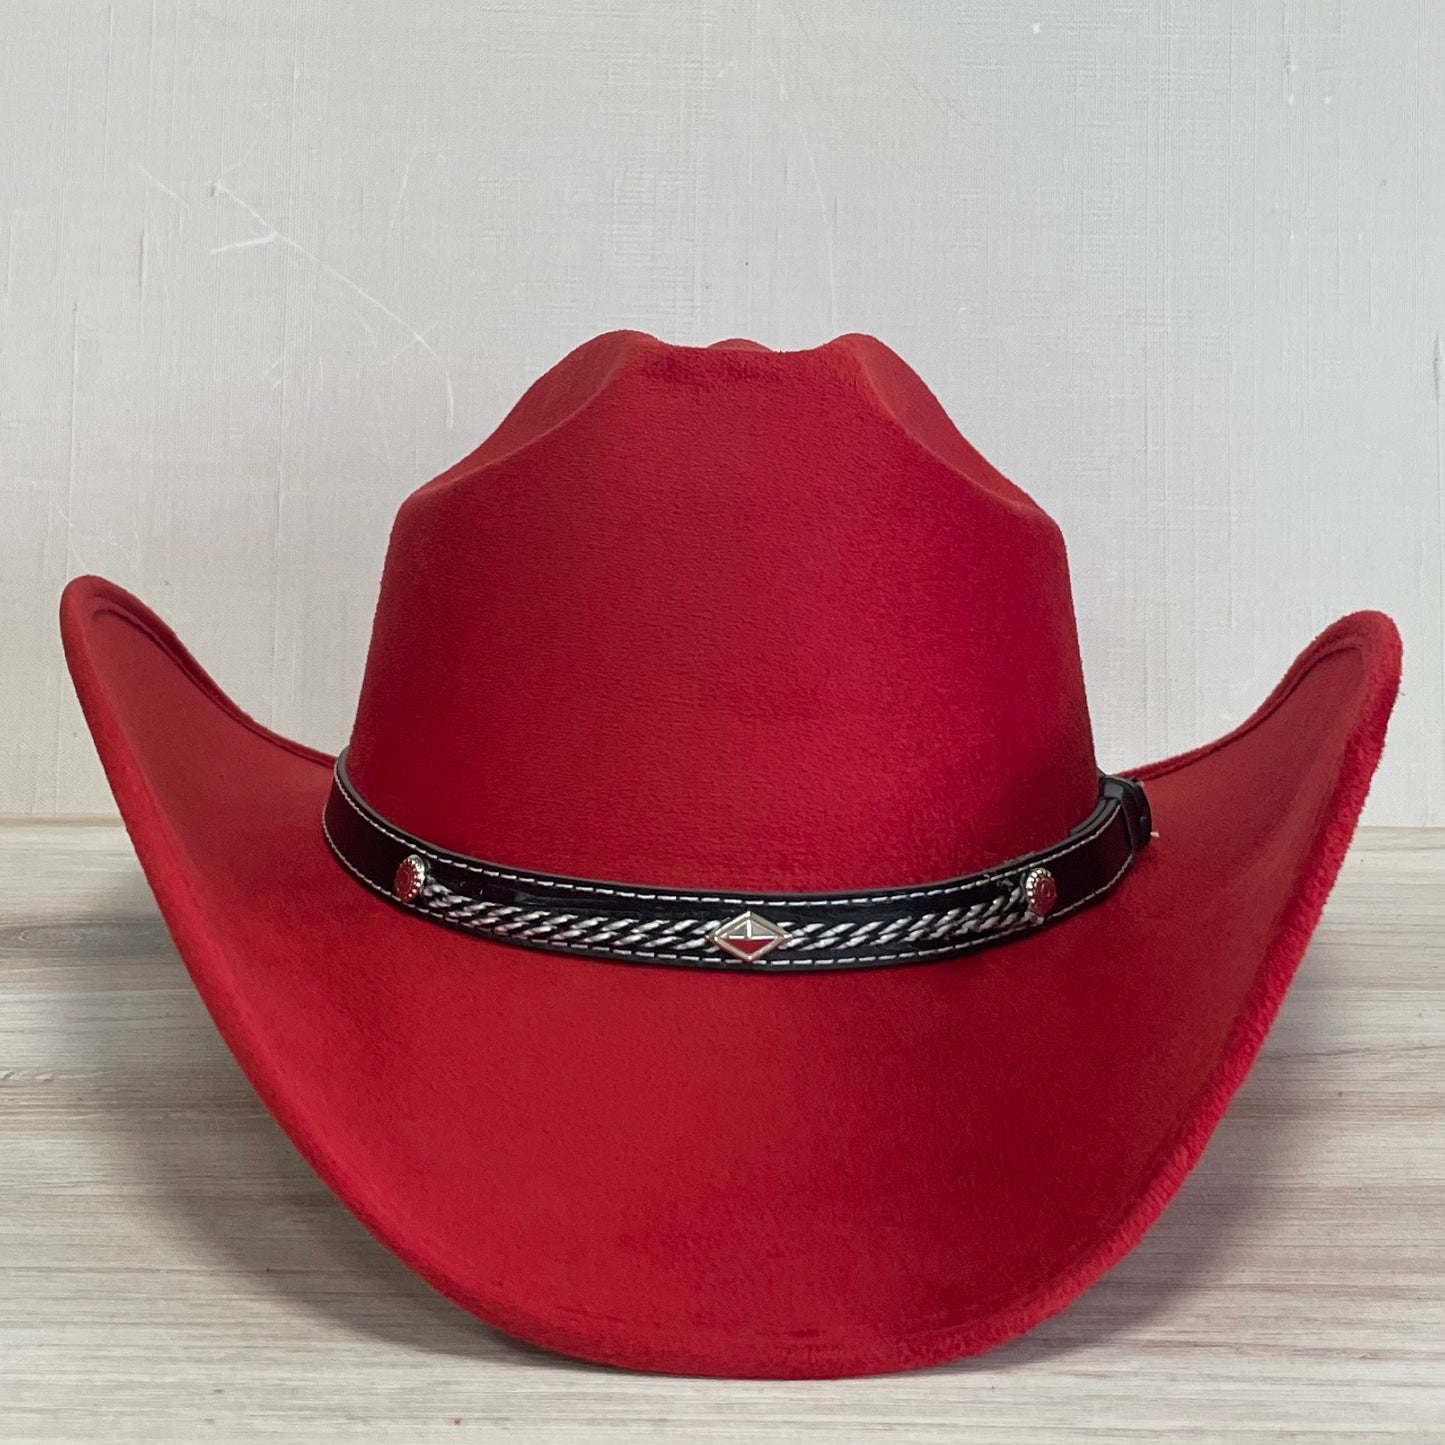 Chapeau Western Cowboy en Daim - Country